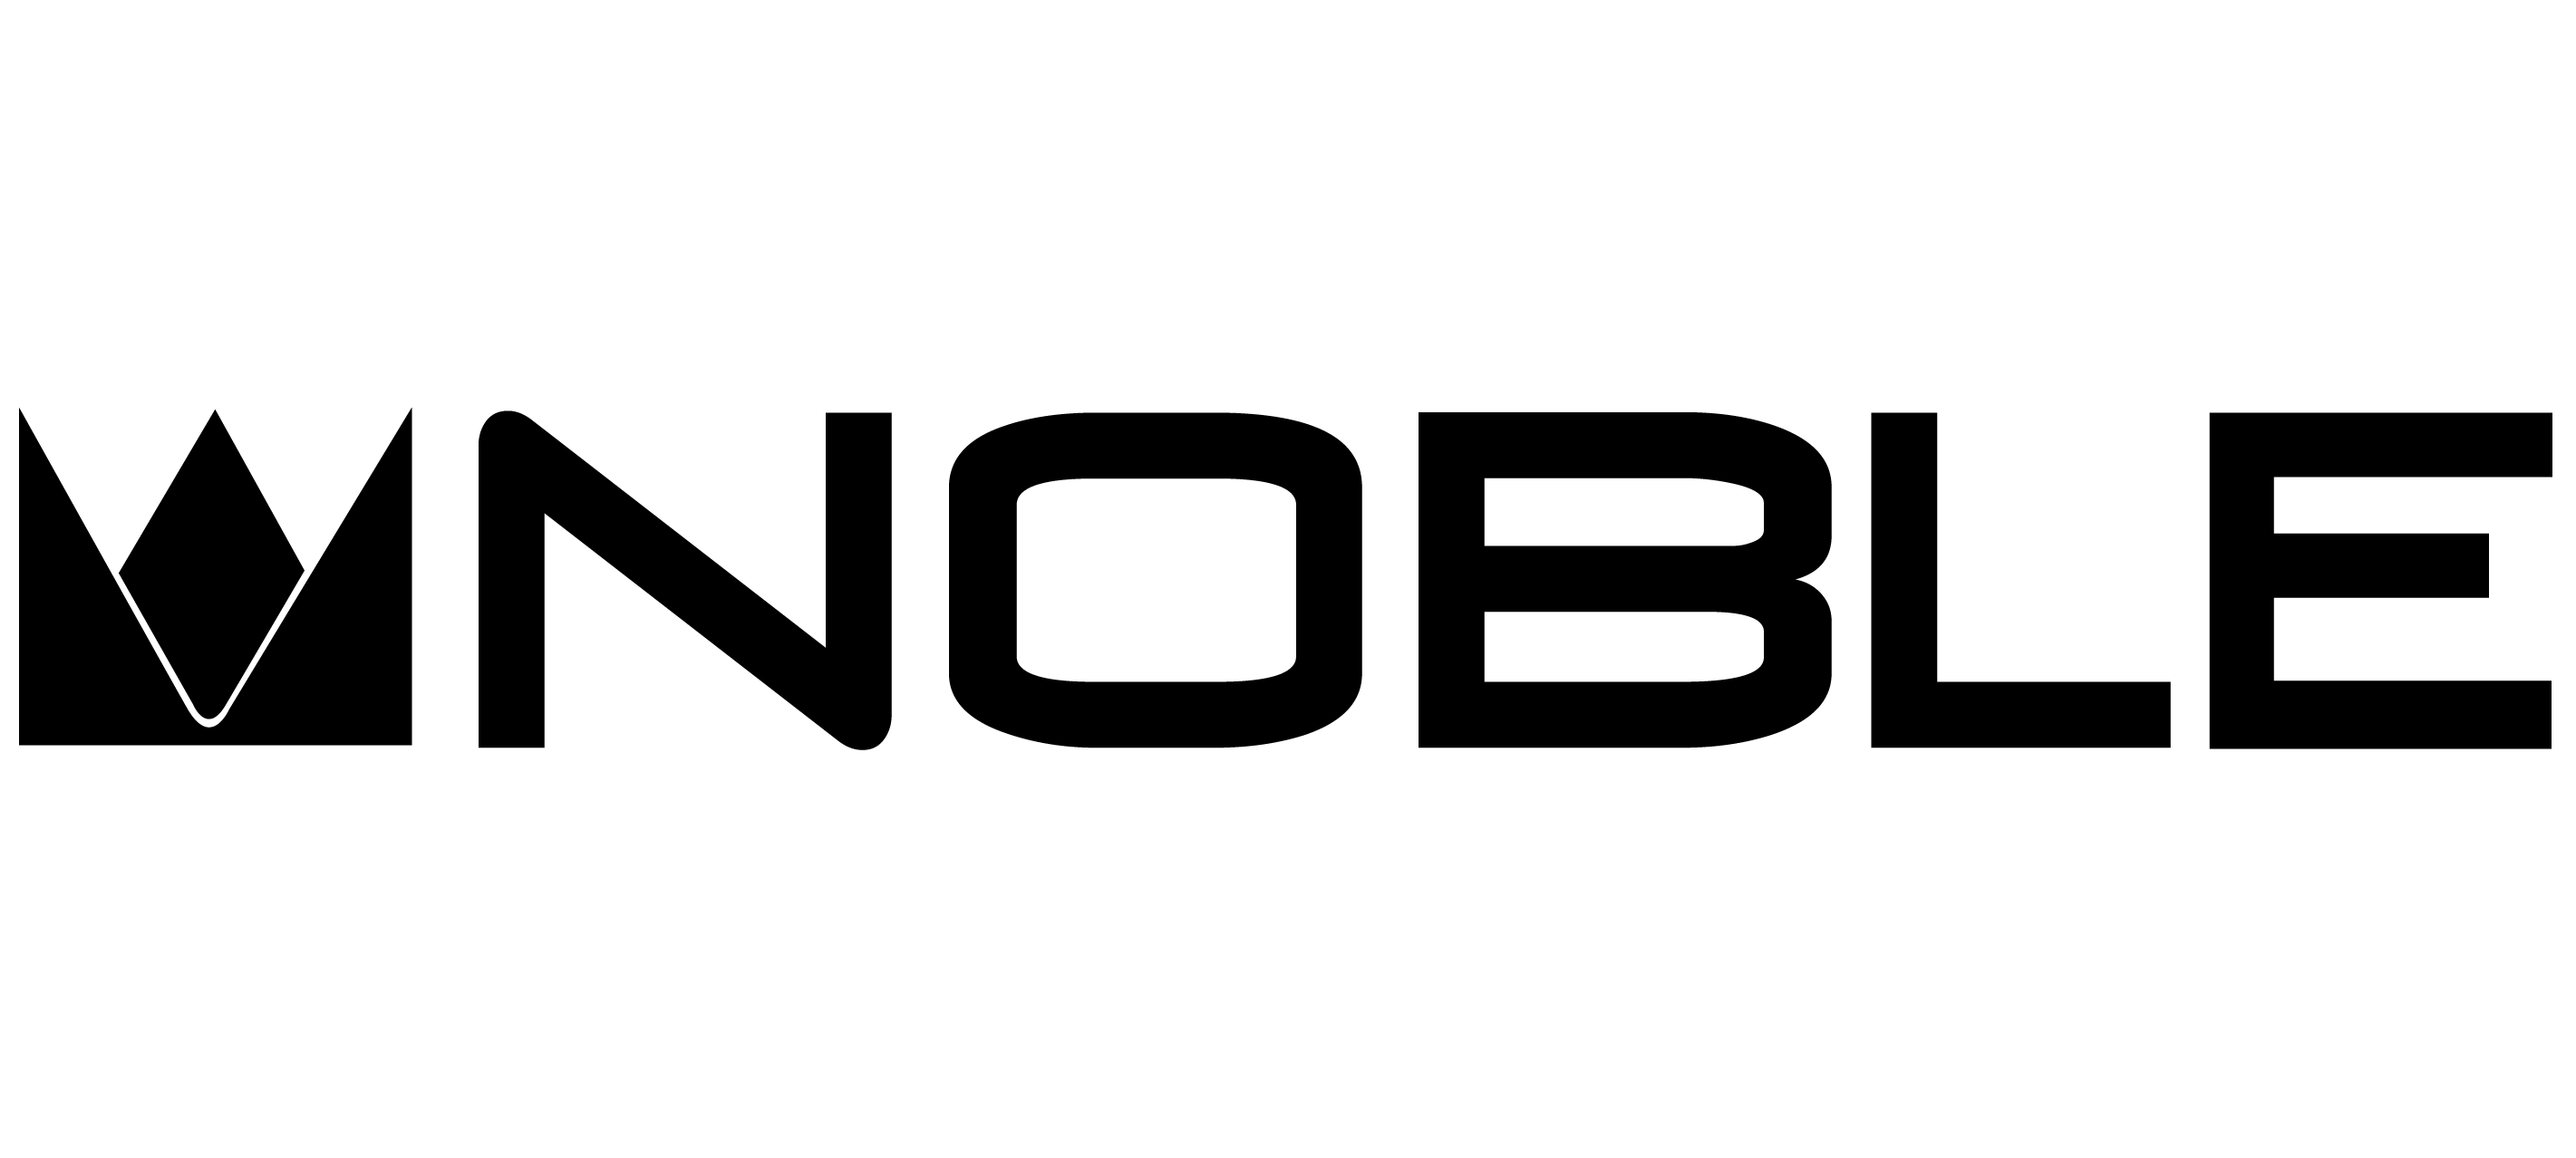 【Noble Audio】「EDC Bell」展示のご案内